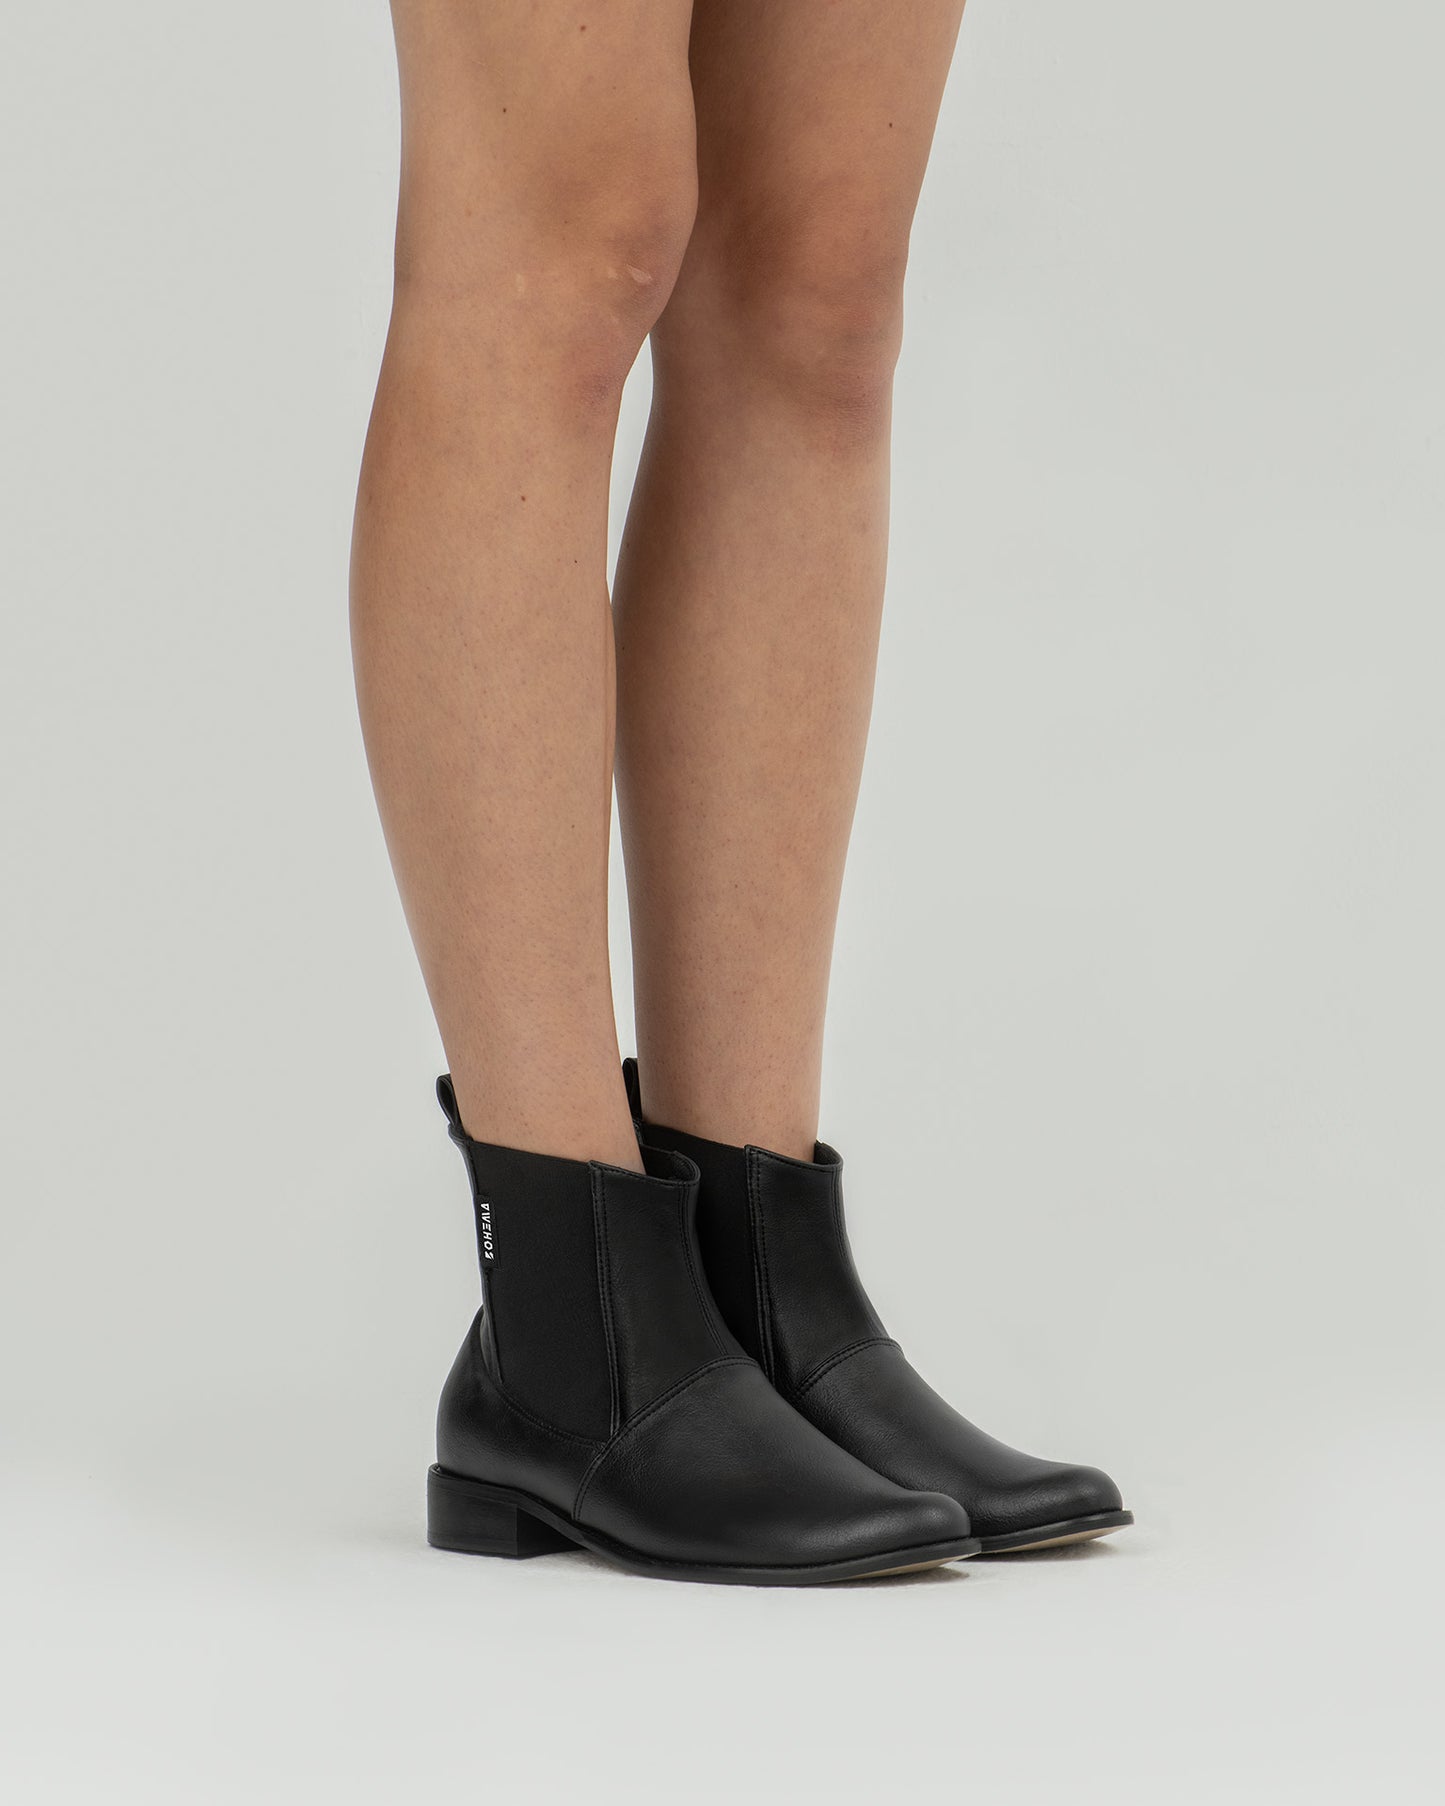 Chelsea Boots No. 2 vegan women's chelsea boots